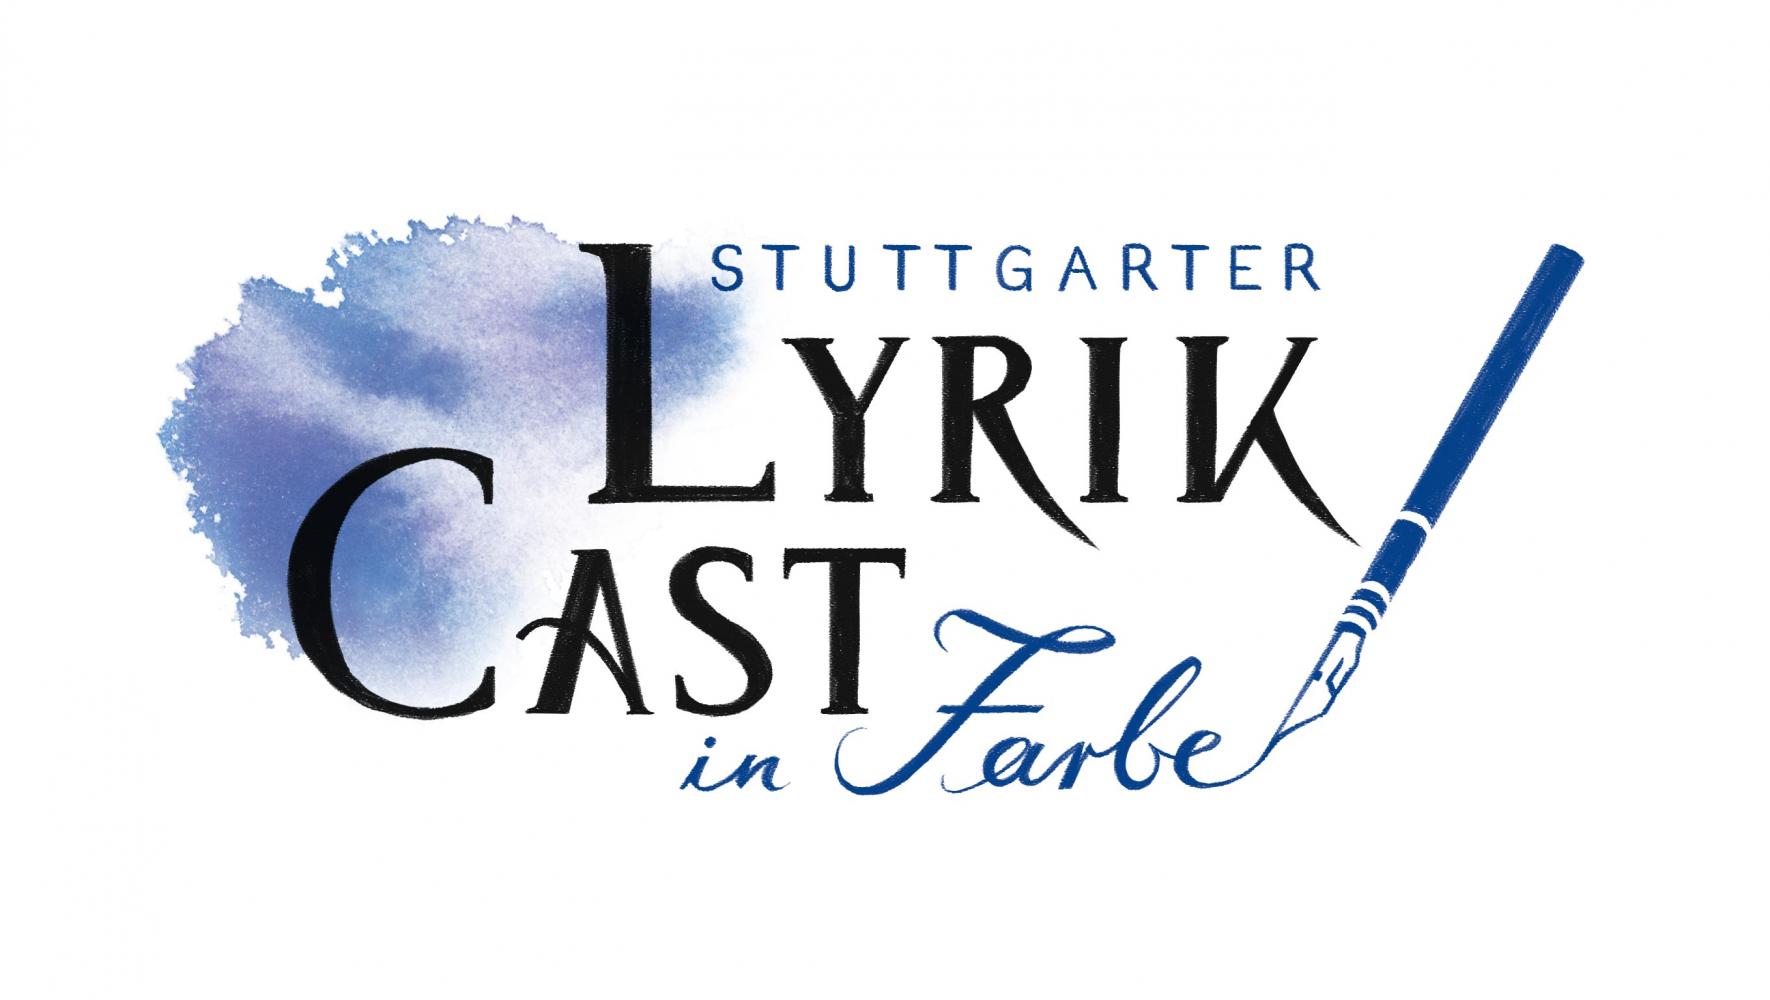 Bild zur Veranstaltung - Stuttgarter Lyrik-Cast in Farbe